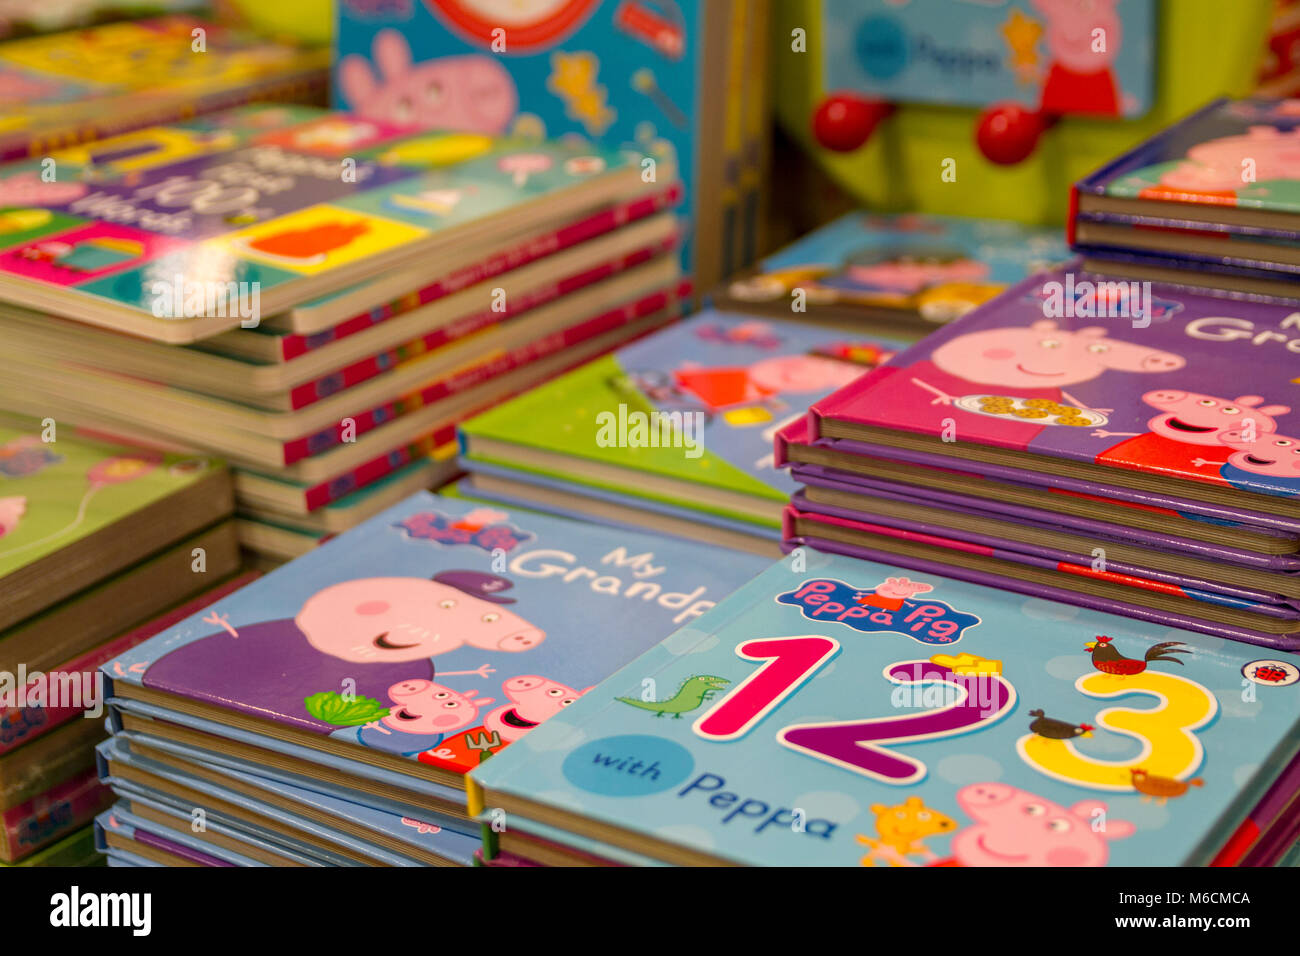 Libri per bambini, bambini prenota, kid,child Peppa Pig libri sul